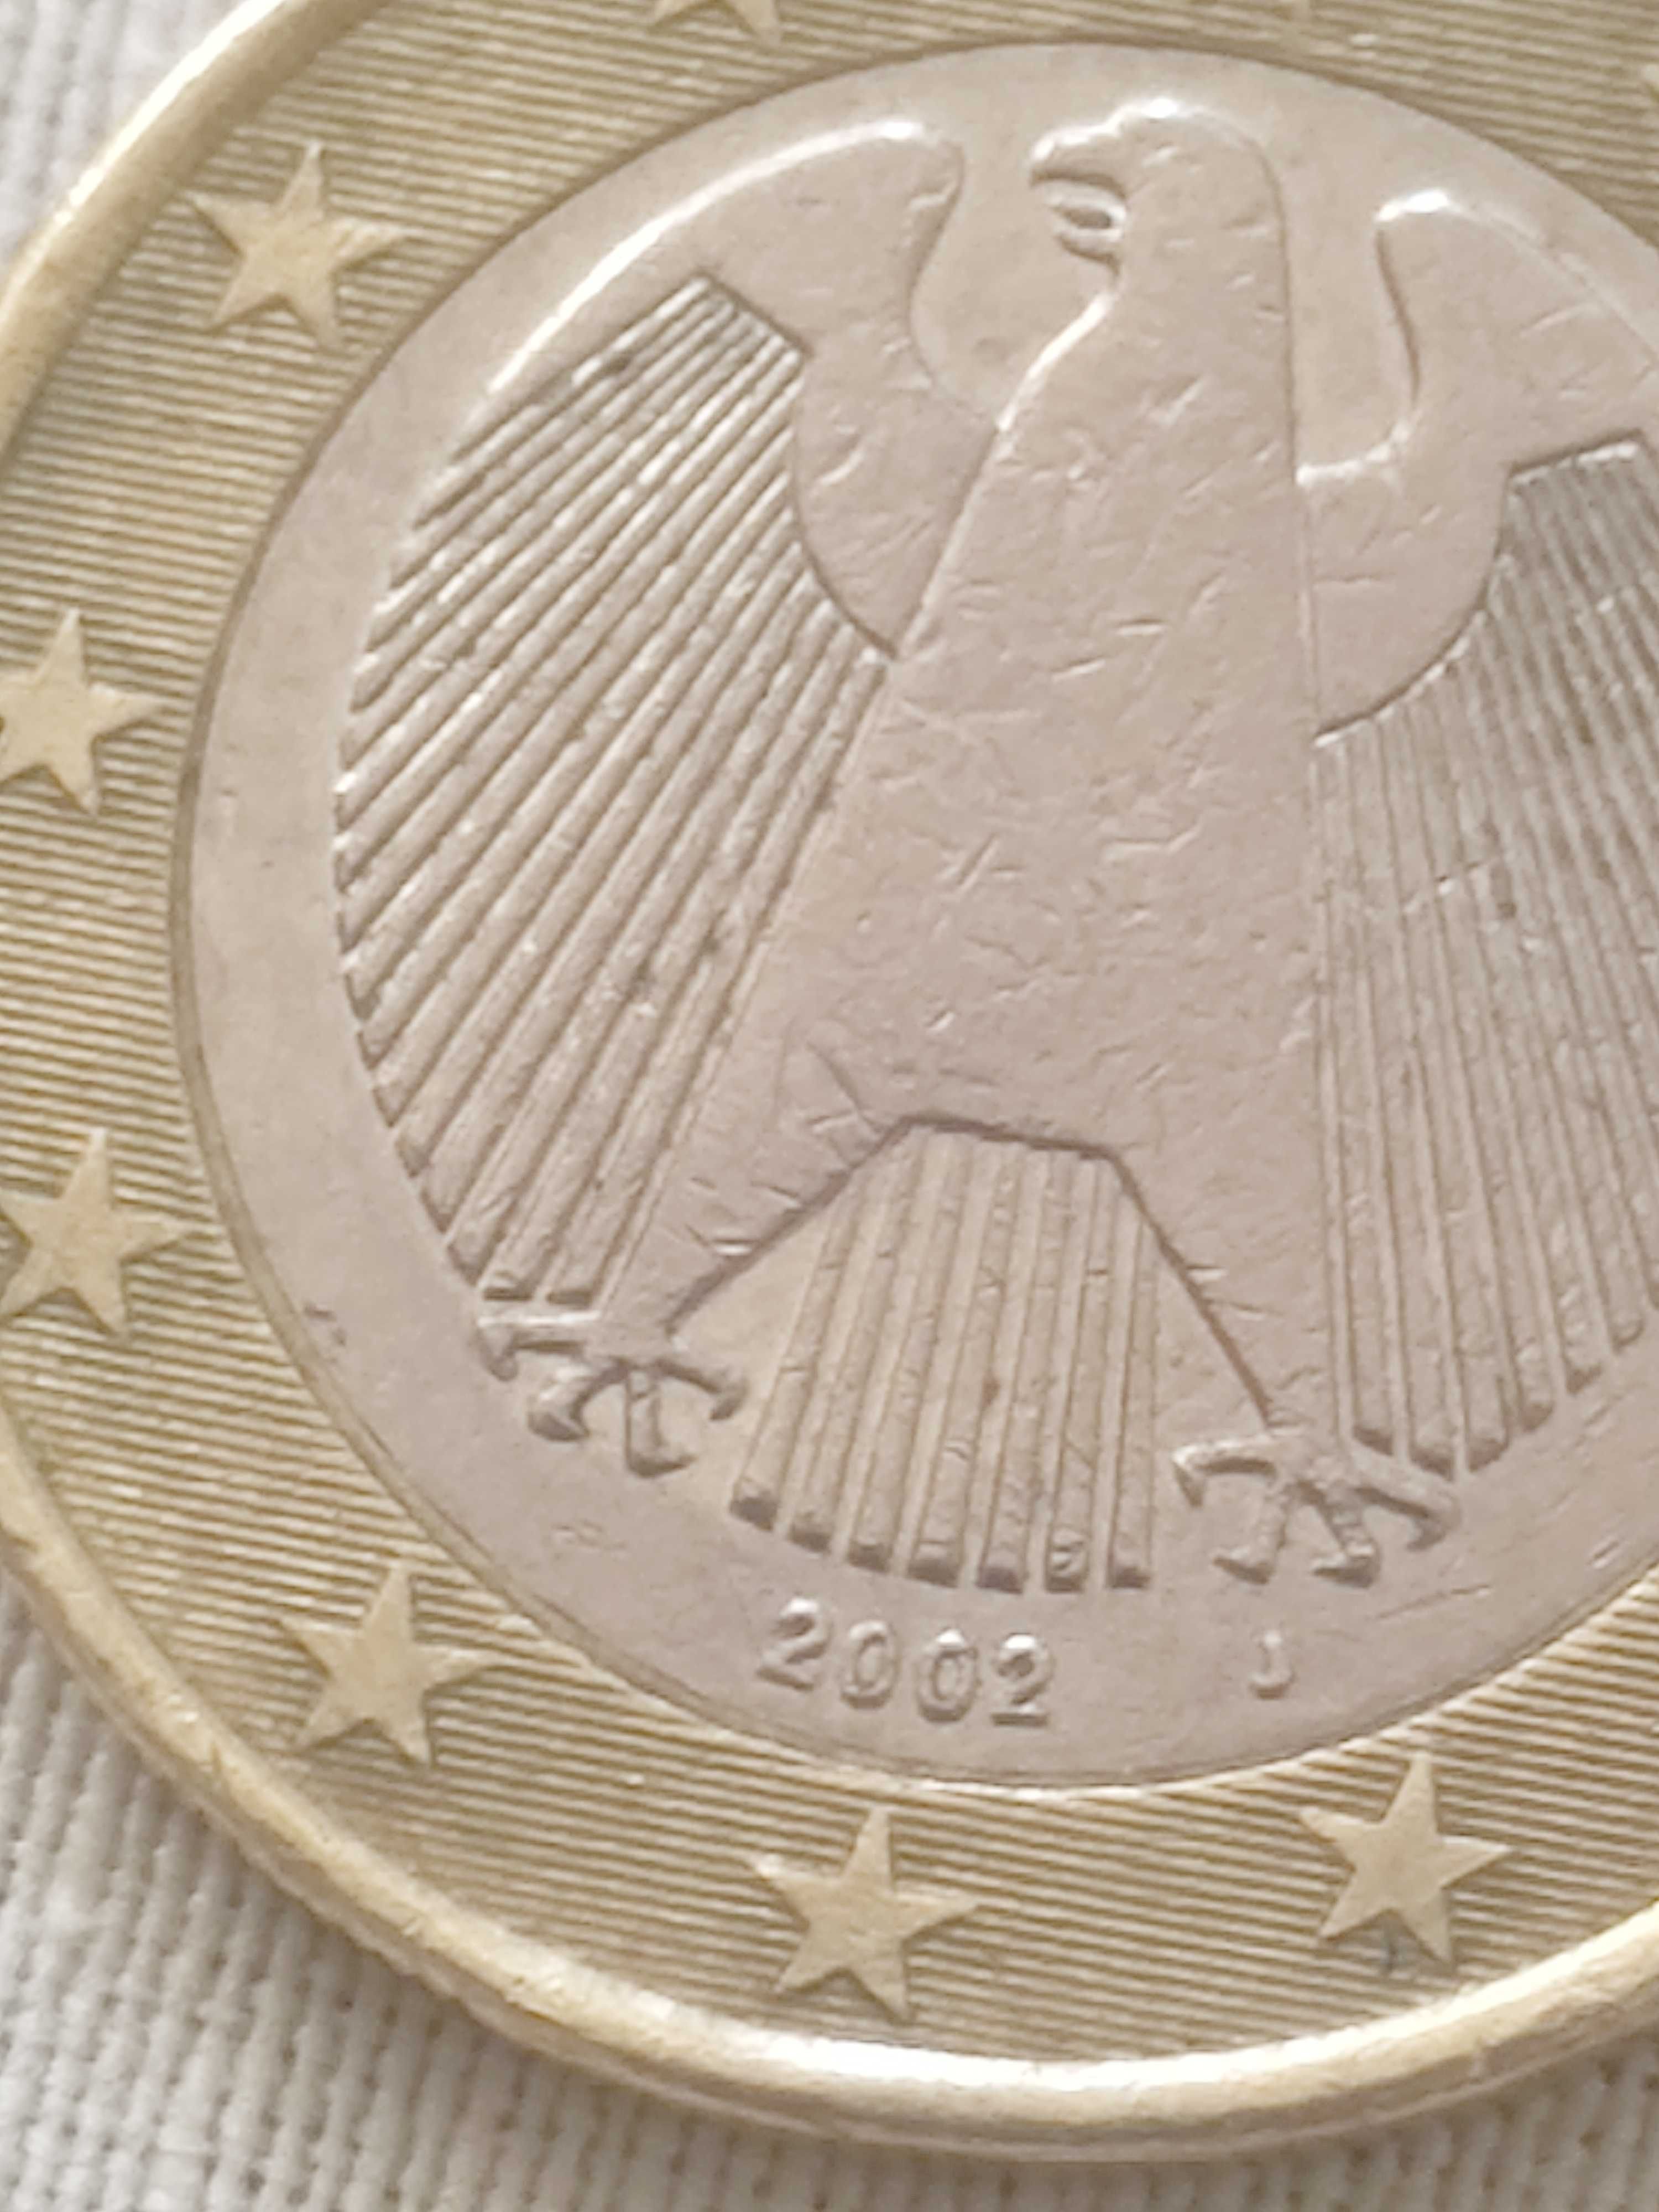 Vând două monede vechi 1 euro din 2002 negociabil